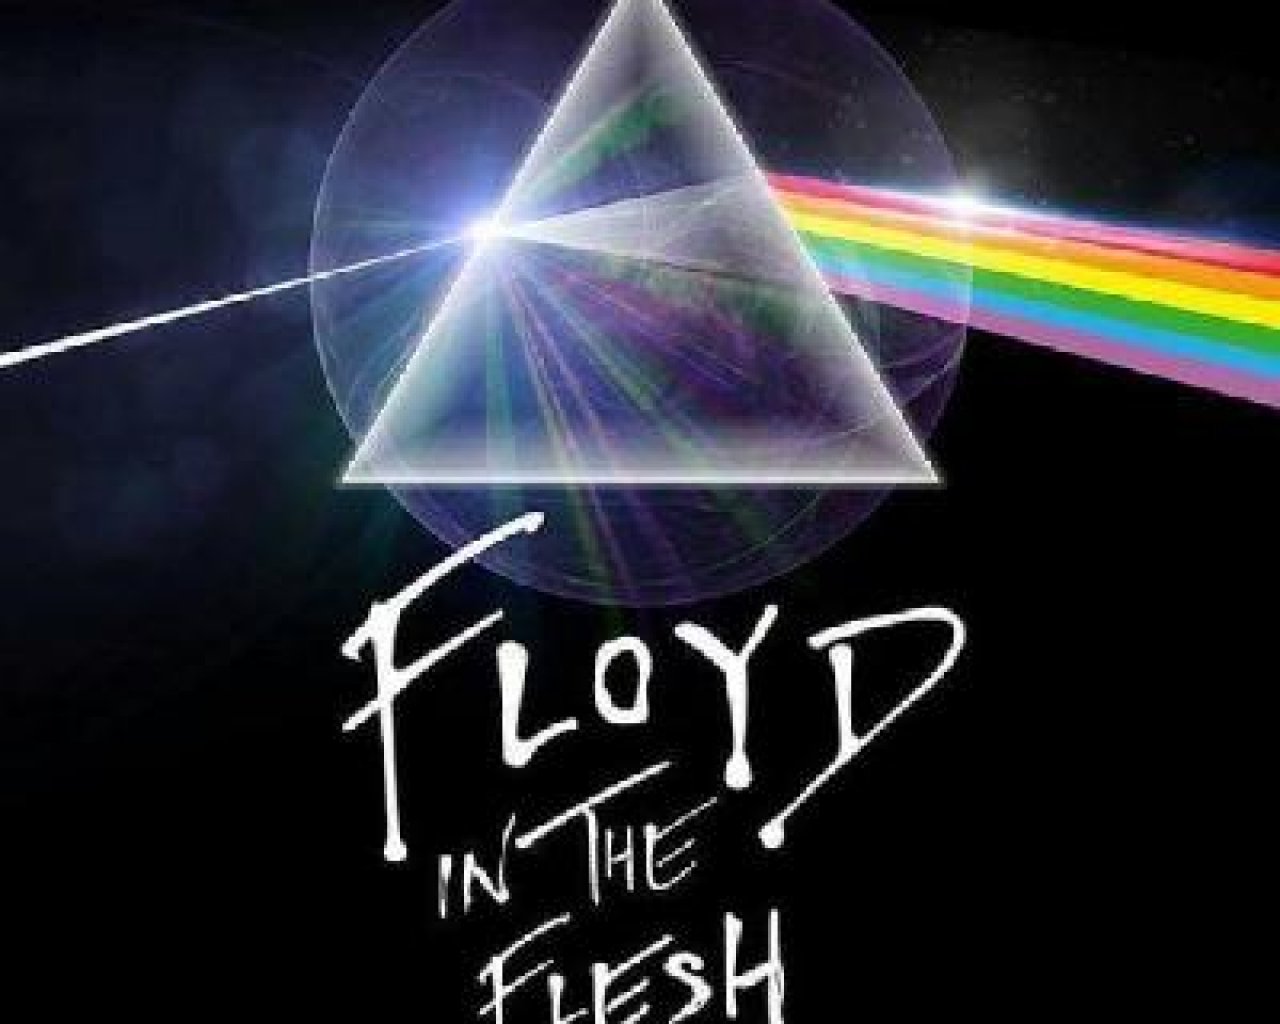 Floyd In The Flesh